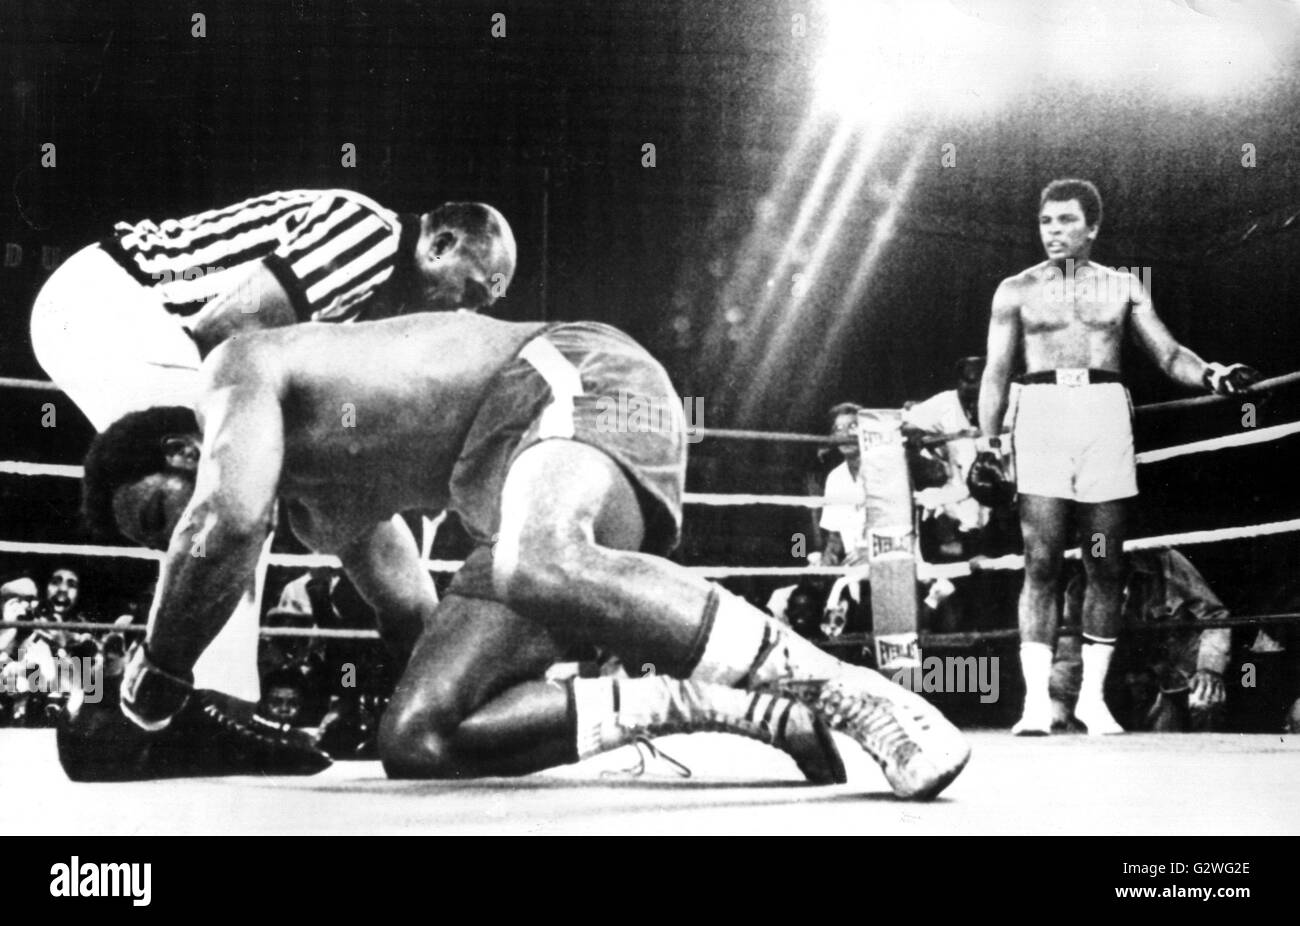 FILE - un file immagine datata 30 ottobre 1974 ci mostra a heavyweight boxer Muhammad Ali indietro (R) in piedi in un angolo come suo knock-out avversario George Foreman anteriore (L) le lotte per ottenere torna sui suoi piedi come egli viene dato il conteggio dall'arbitro nell'ottavo round della loro boxe bout in Congo, a Kinshasa, 30 ottobre 1974. Nato Cassio argilla, boxe leggenda Muhammad Ali, soprannominato 'il più grande, ' morì il 03 giugno 2016 a Phoenix, Arizona, Stati Uniti d'America, all'età di 74, una famiglia portavoce ha detto. Foto: dpa Foto Stock